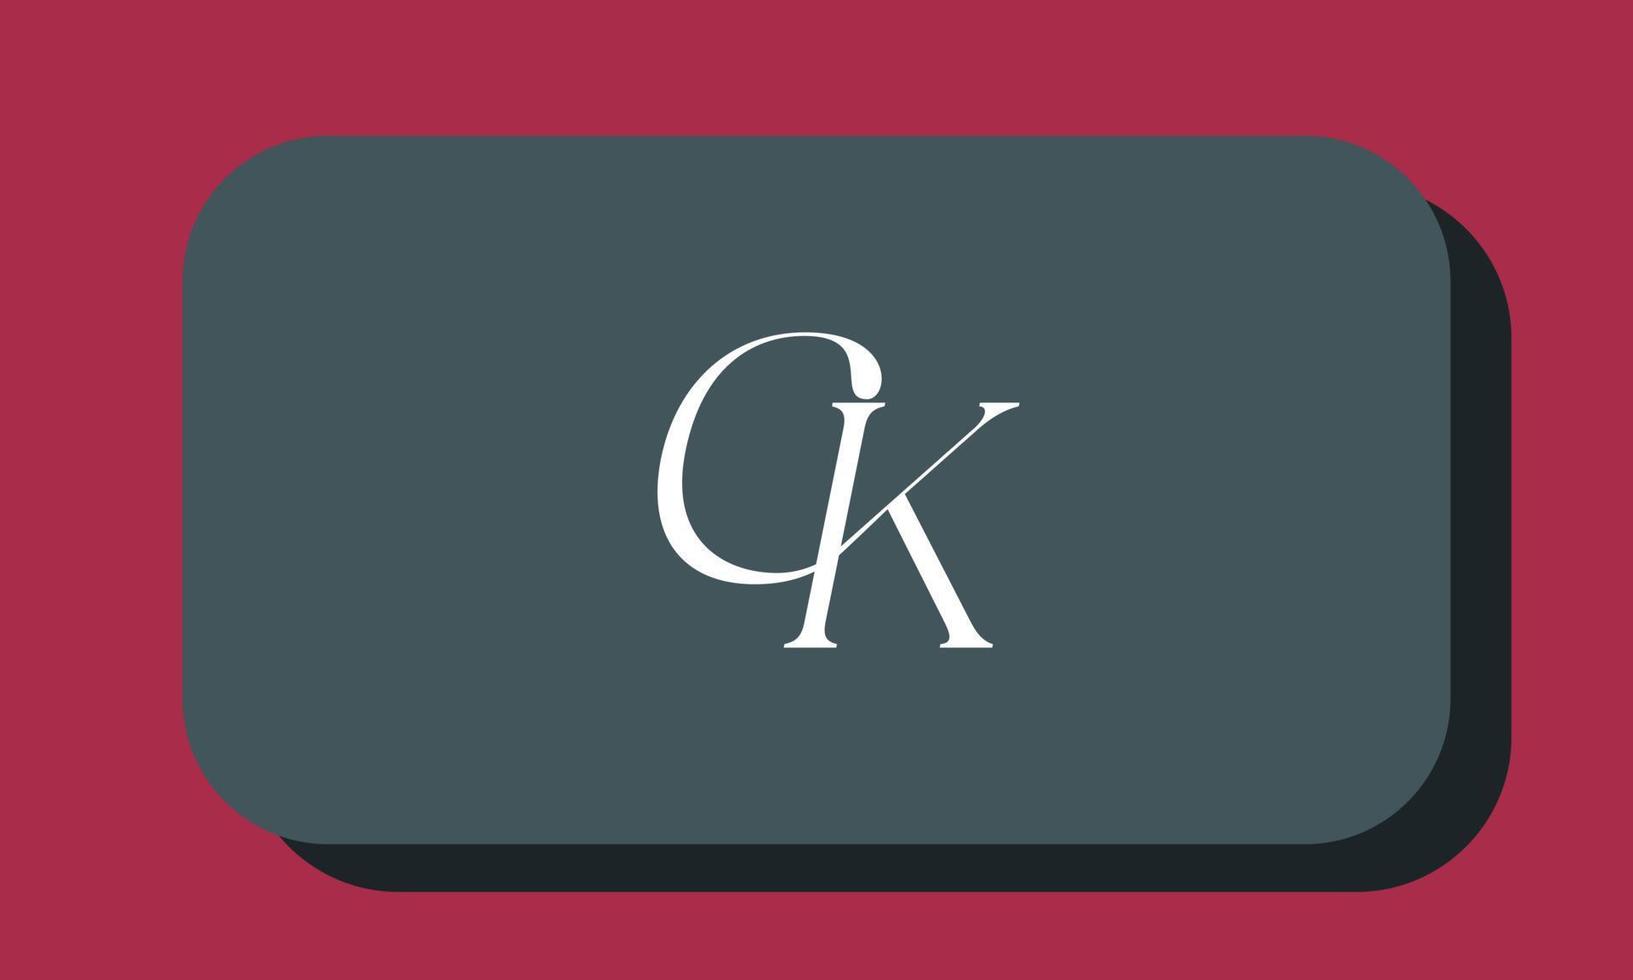 letras do alfabeto iniciais monograma logotipo ck, kc, c e k vetor